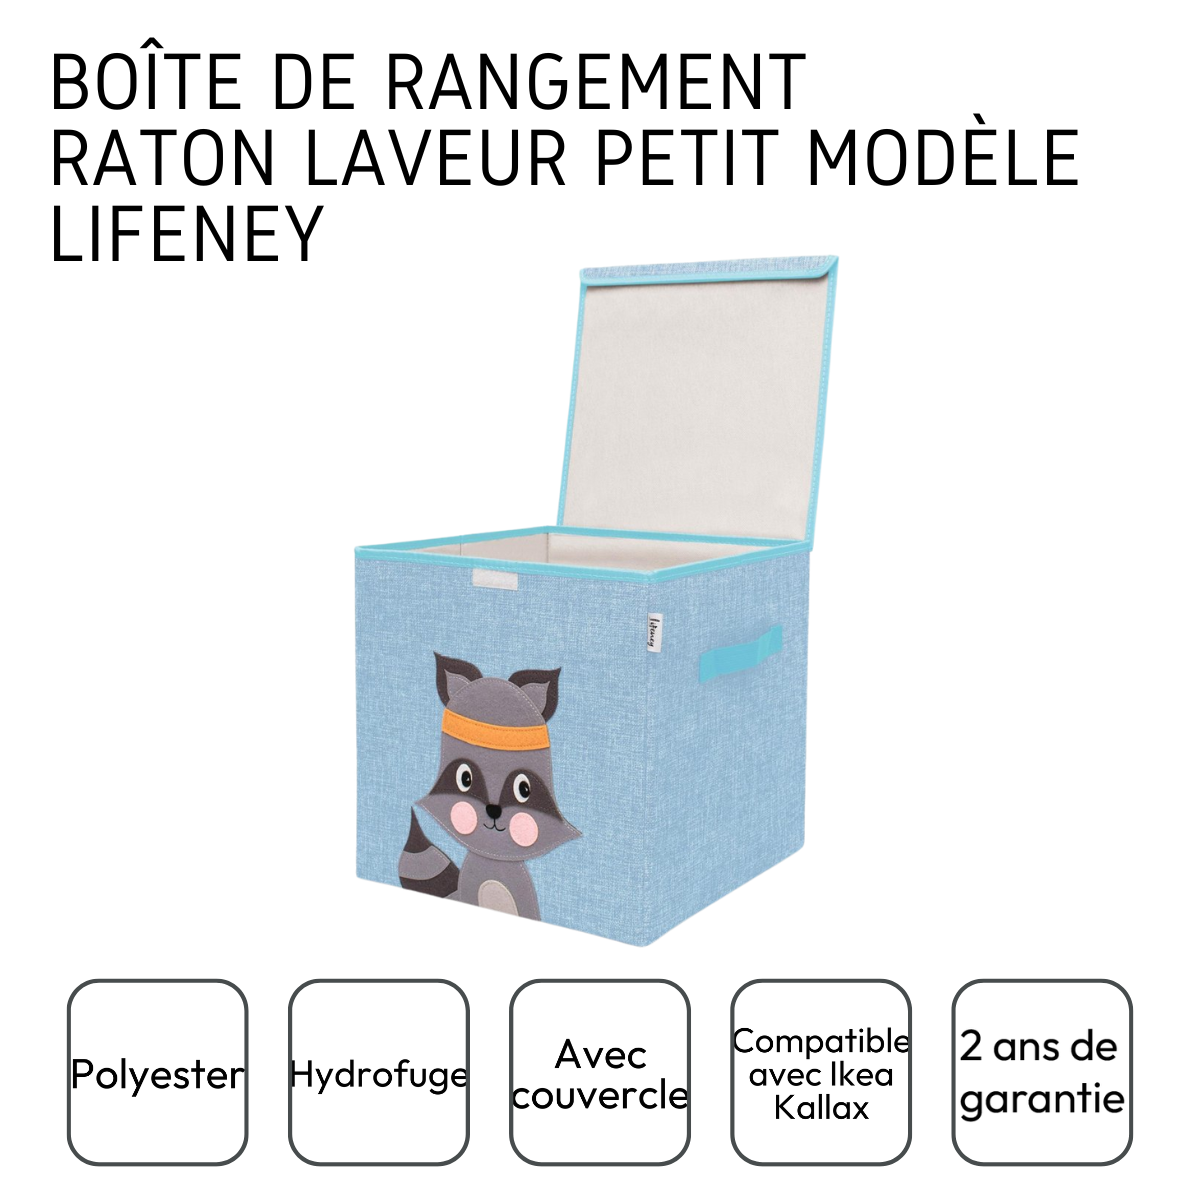 Boîte de rangement "raton laveur" avec couvercle, compatible avec l'étagère IKEA KALLAX Lifeney